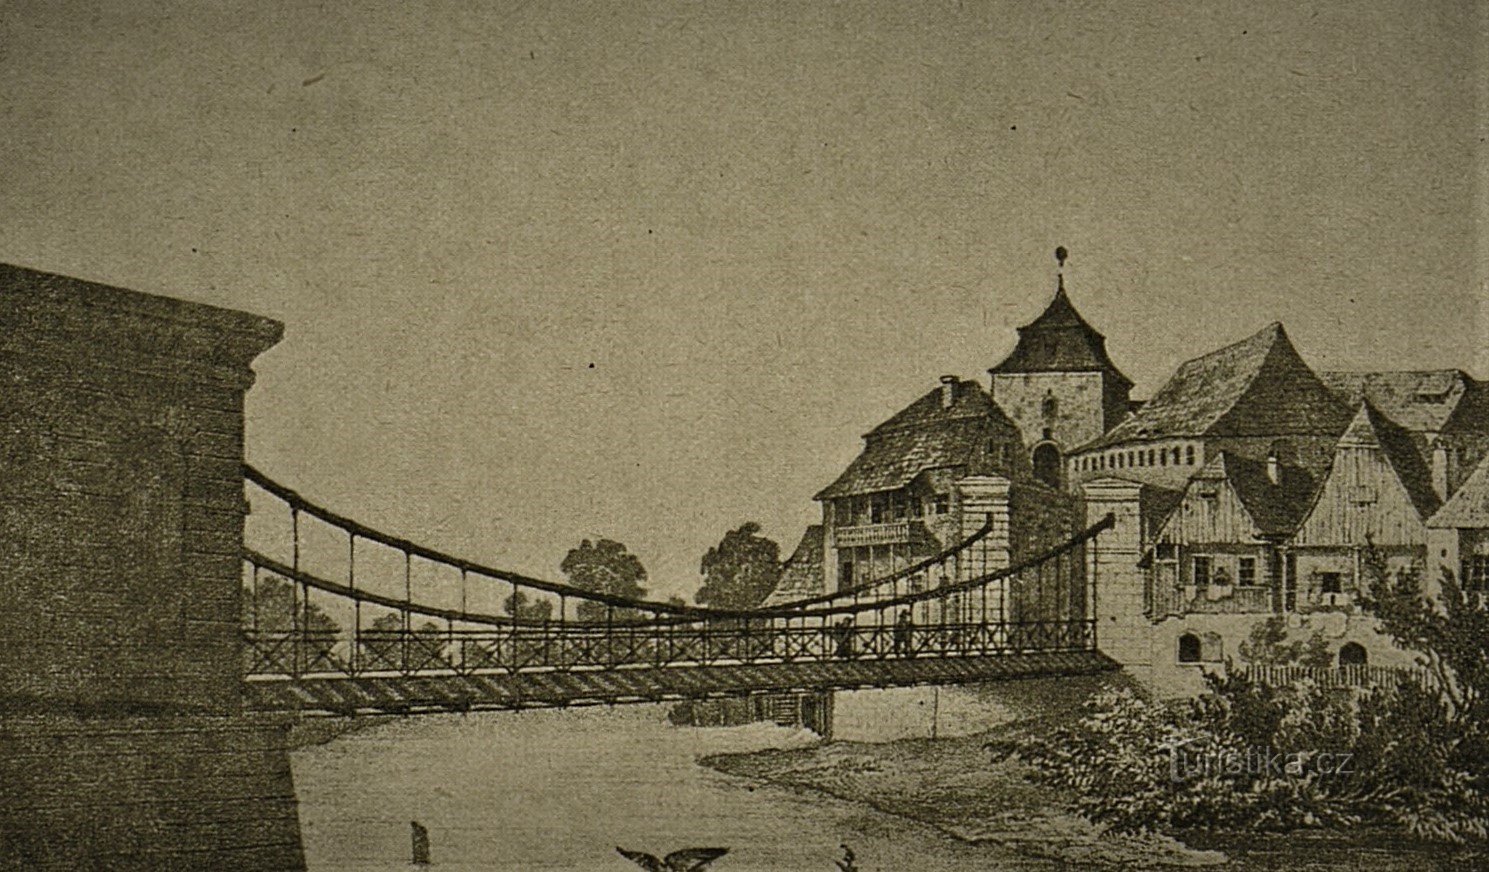 A ponte sobre o Elba e o moinho Podzidni atrás dela (Jaroměř, 2ª metade do século XIX)